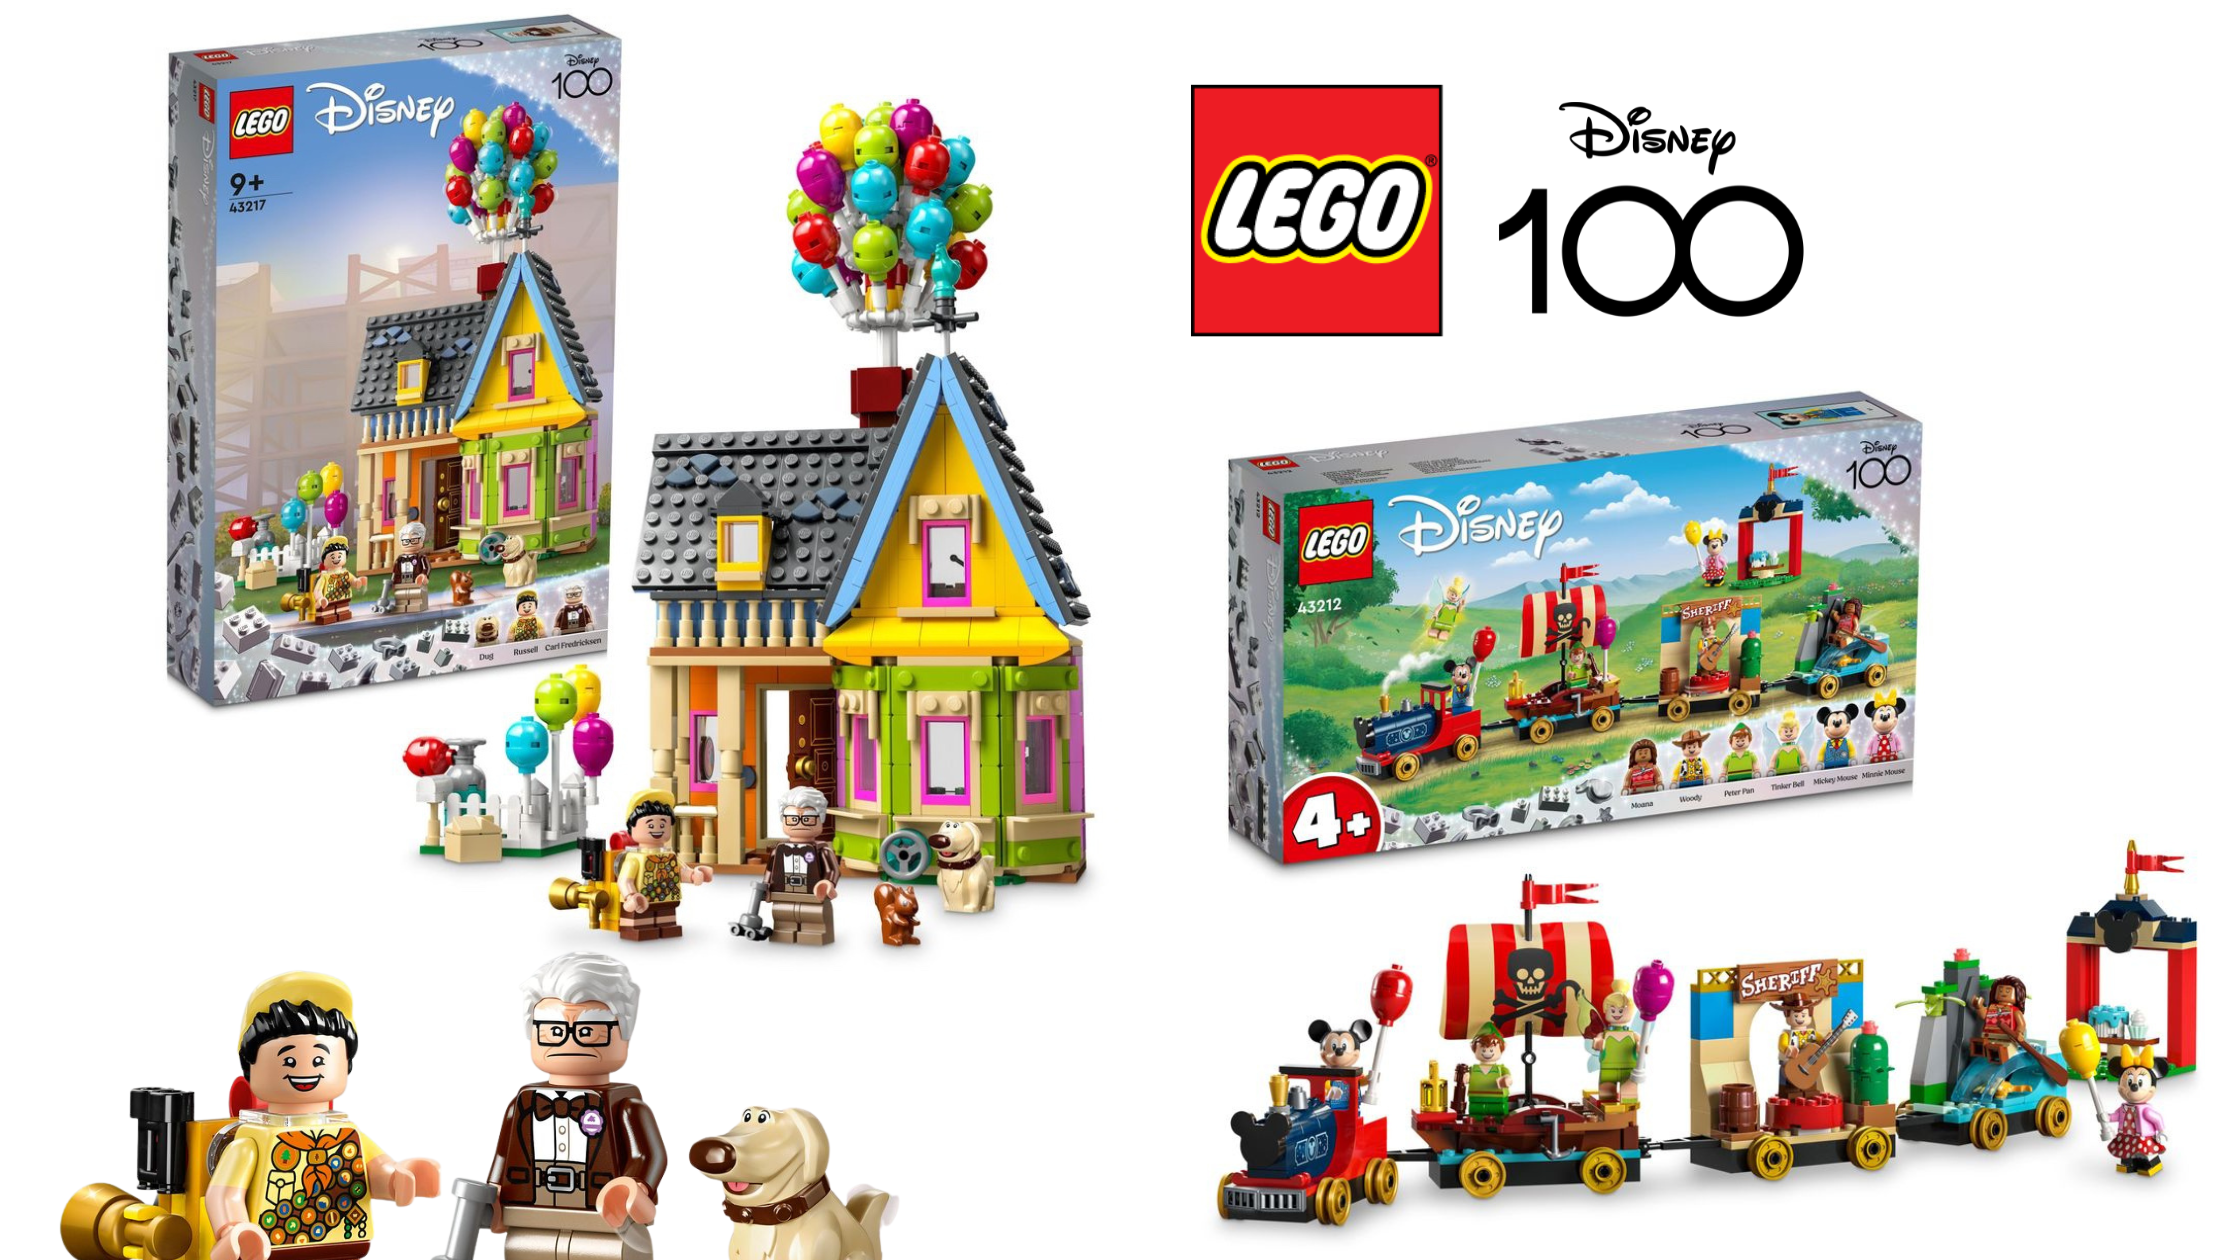 LEGO 43217 'Up' House and 43212 Disney Celebration Train